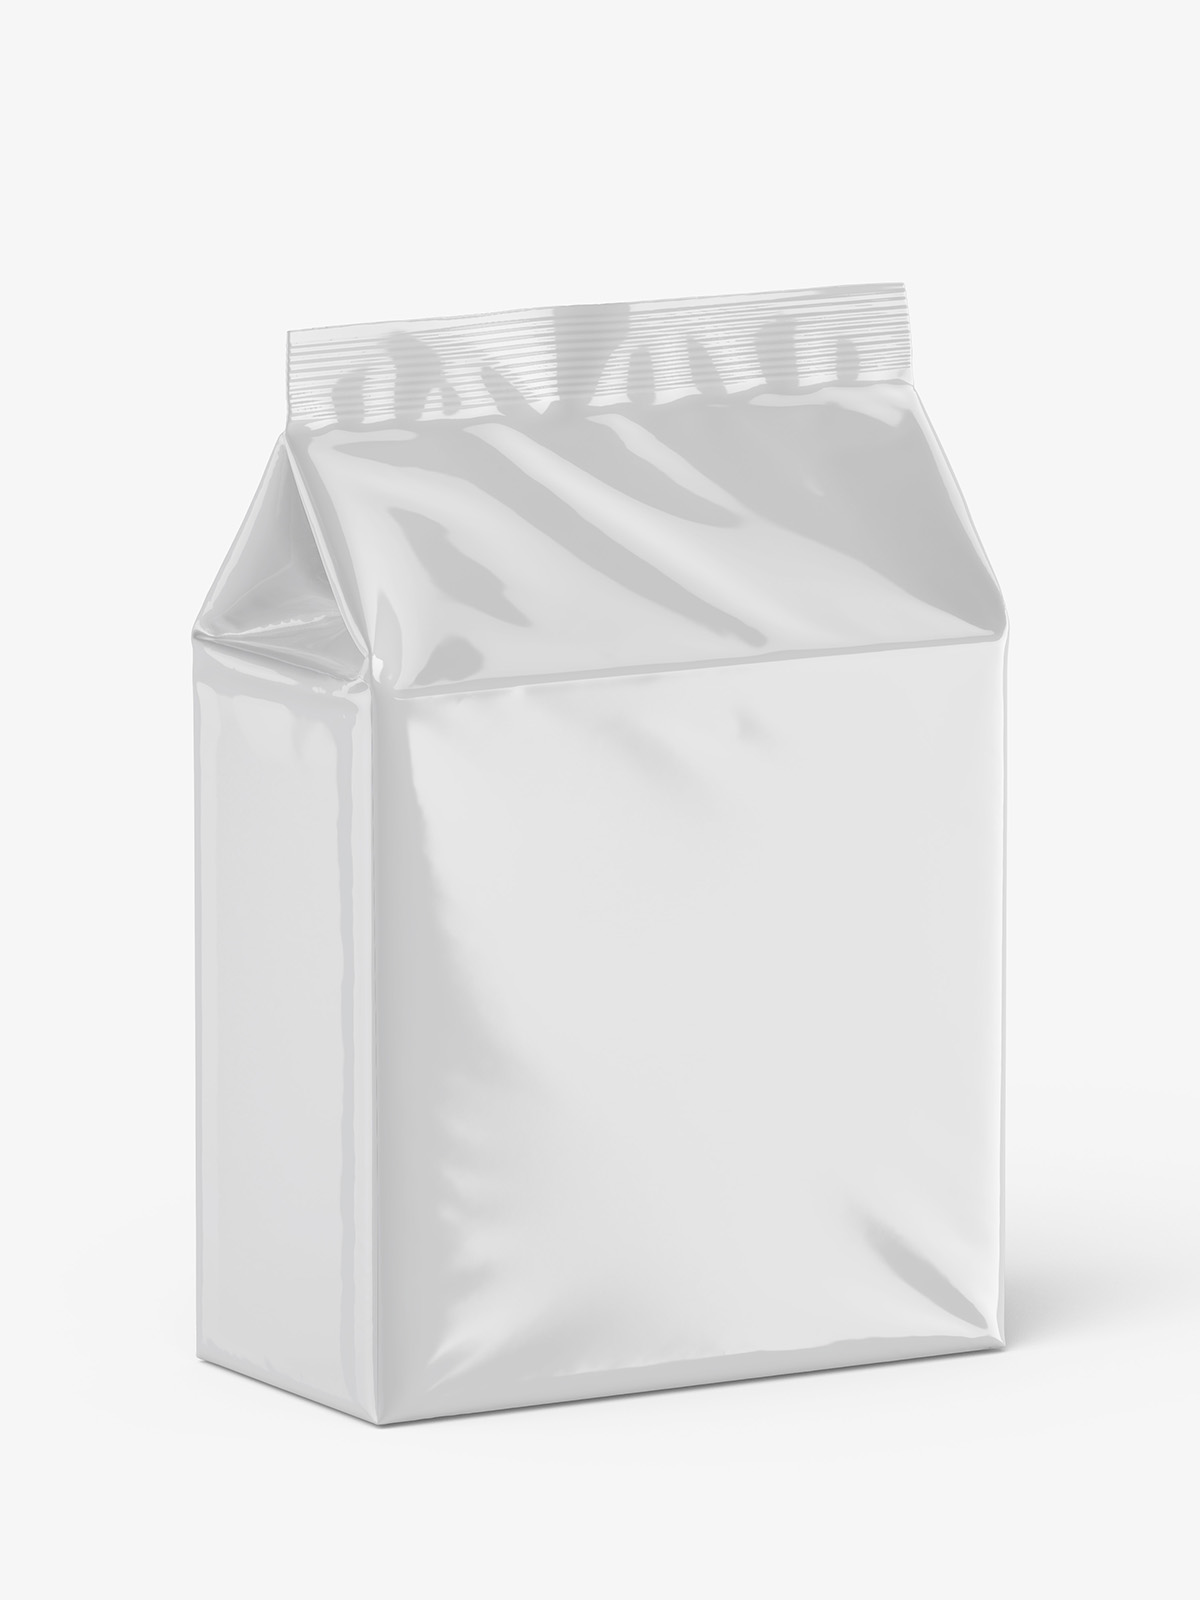 带高光效果的塑料食品包装样机模型Bag Mockup .psd素材